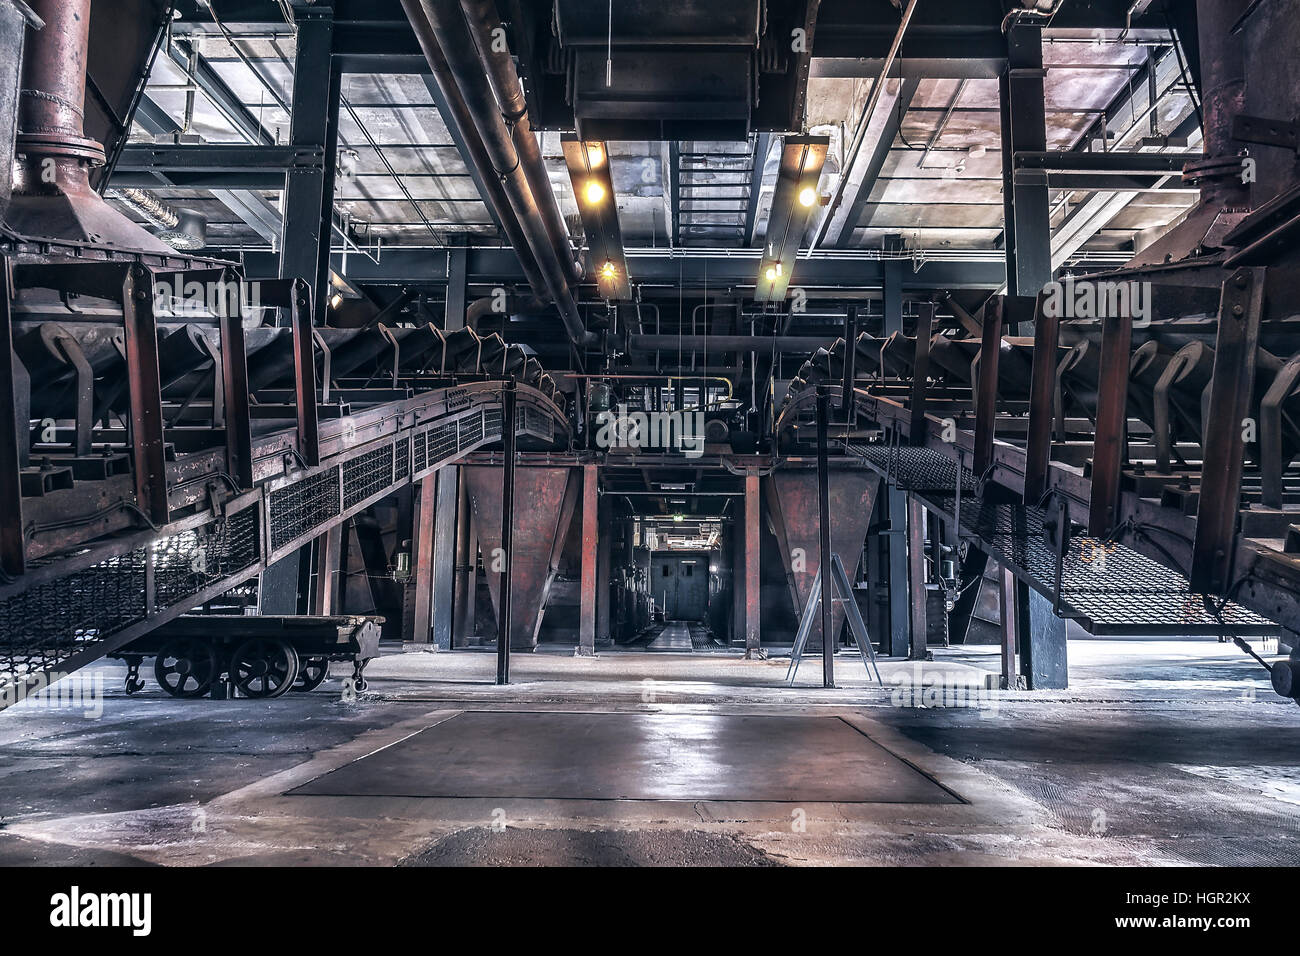 La producción interior de la escena 'Zeche Zollverein' en Essen-Germany. La cerrada planta de horno de coque es patrimonio de la humanidad. Foto de stock